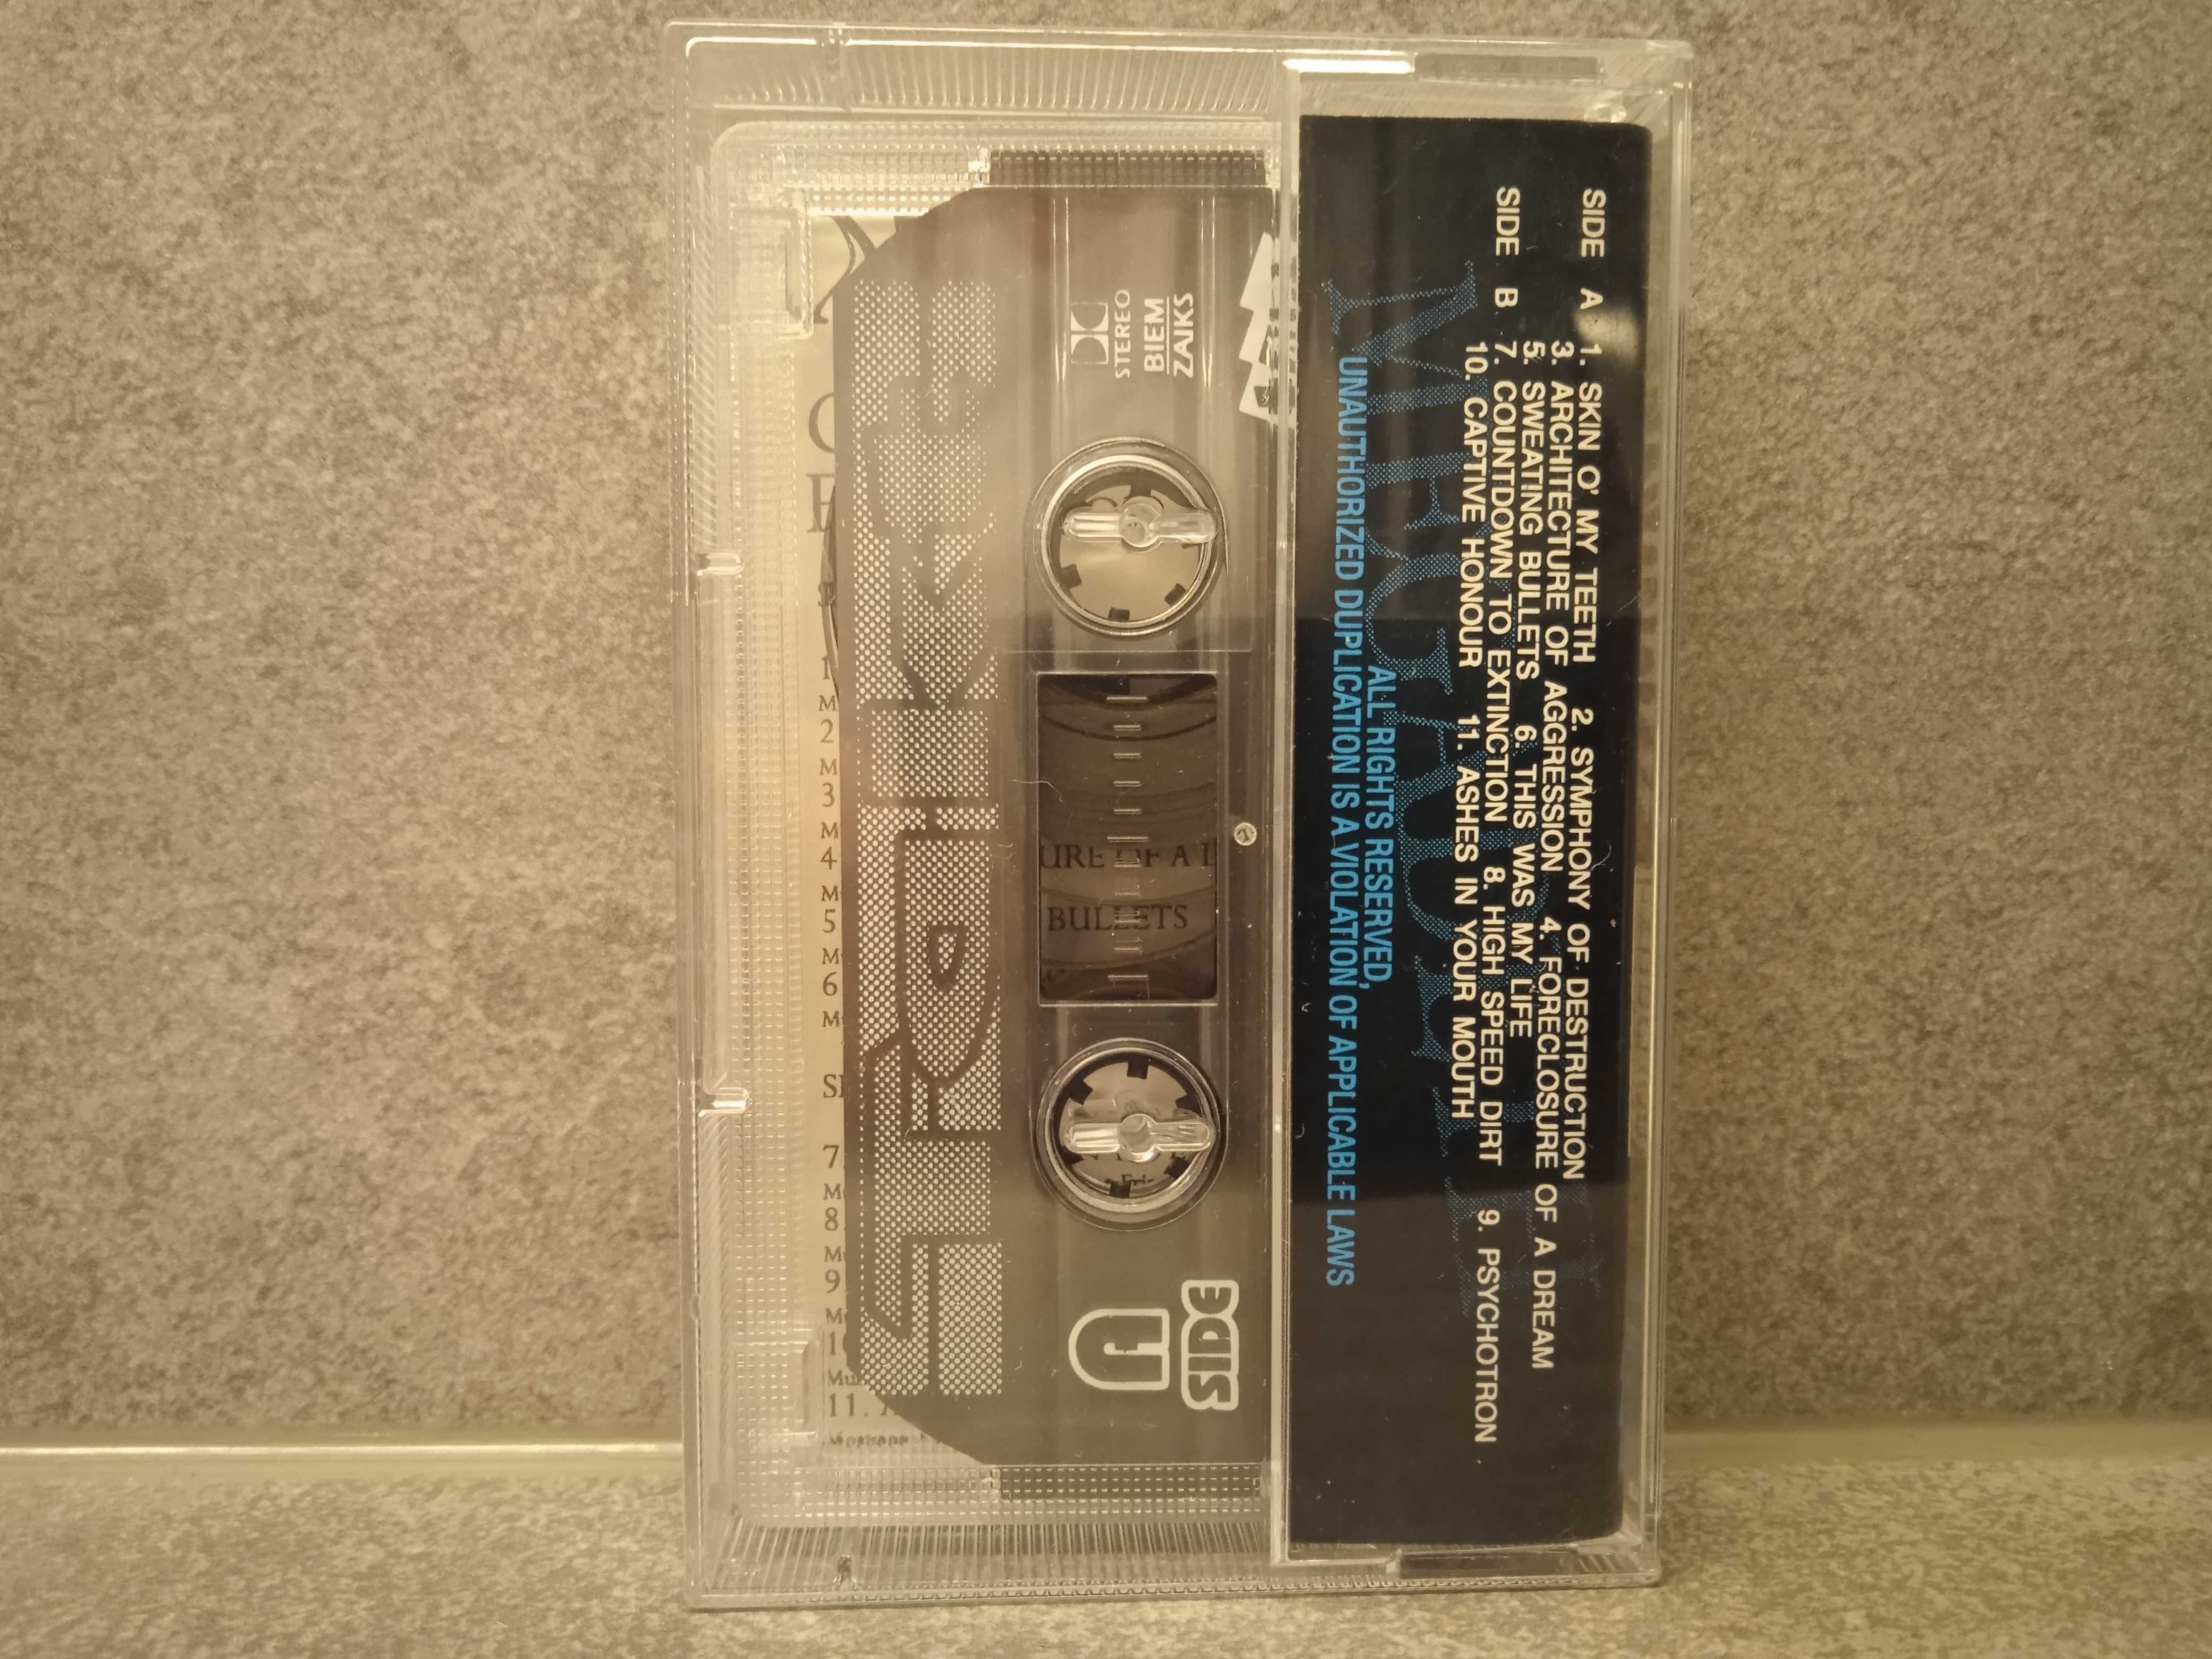 Megadeth - Countdown to Extinction / kaseta